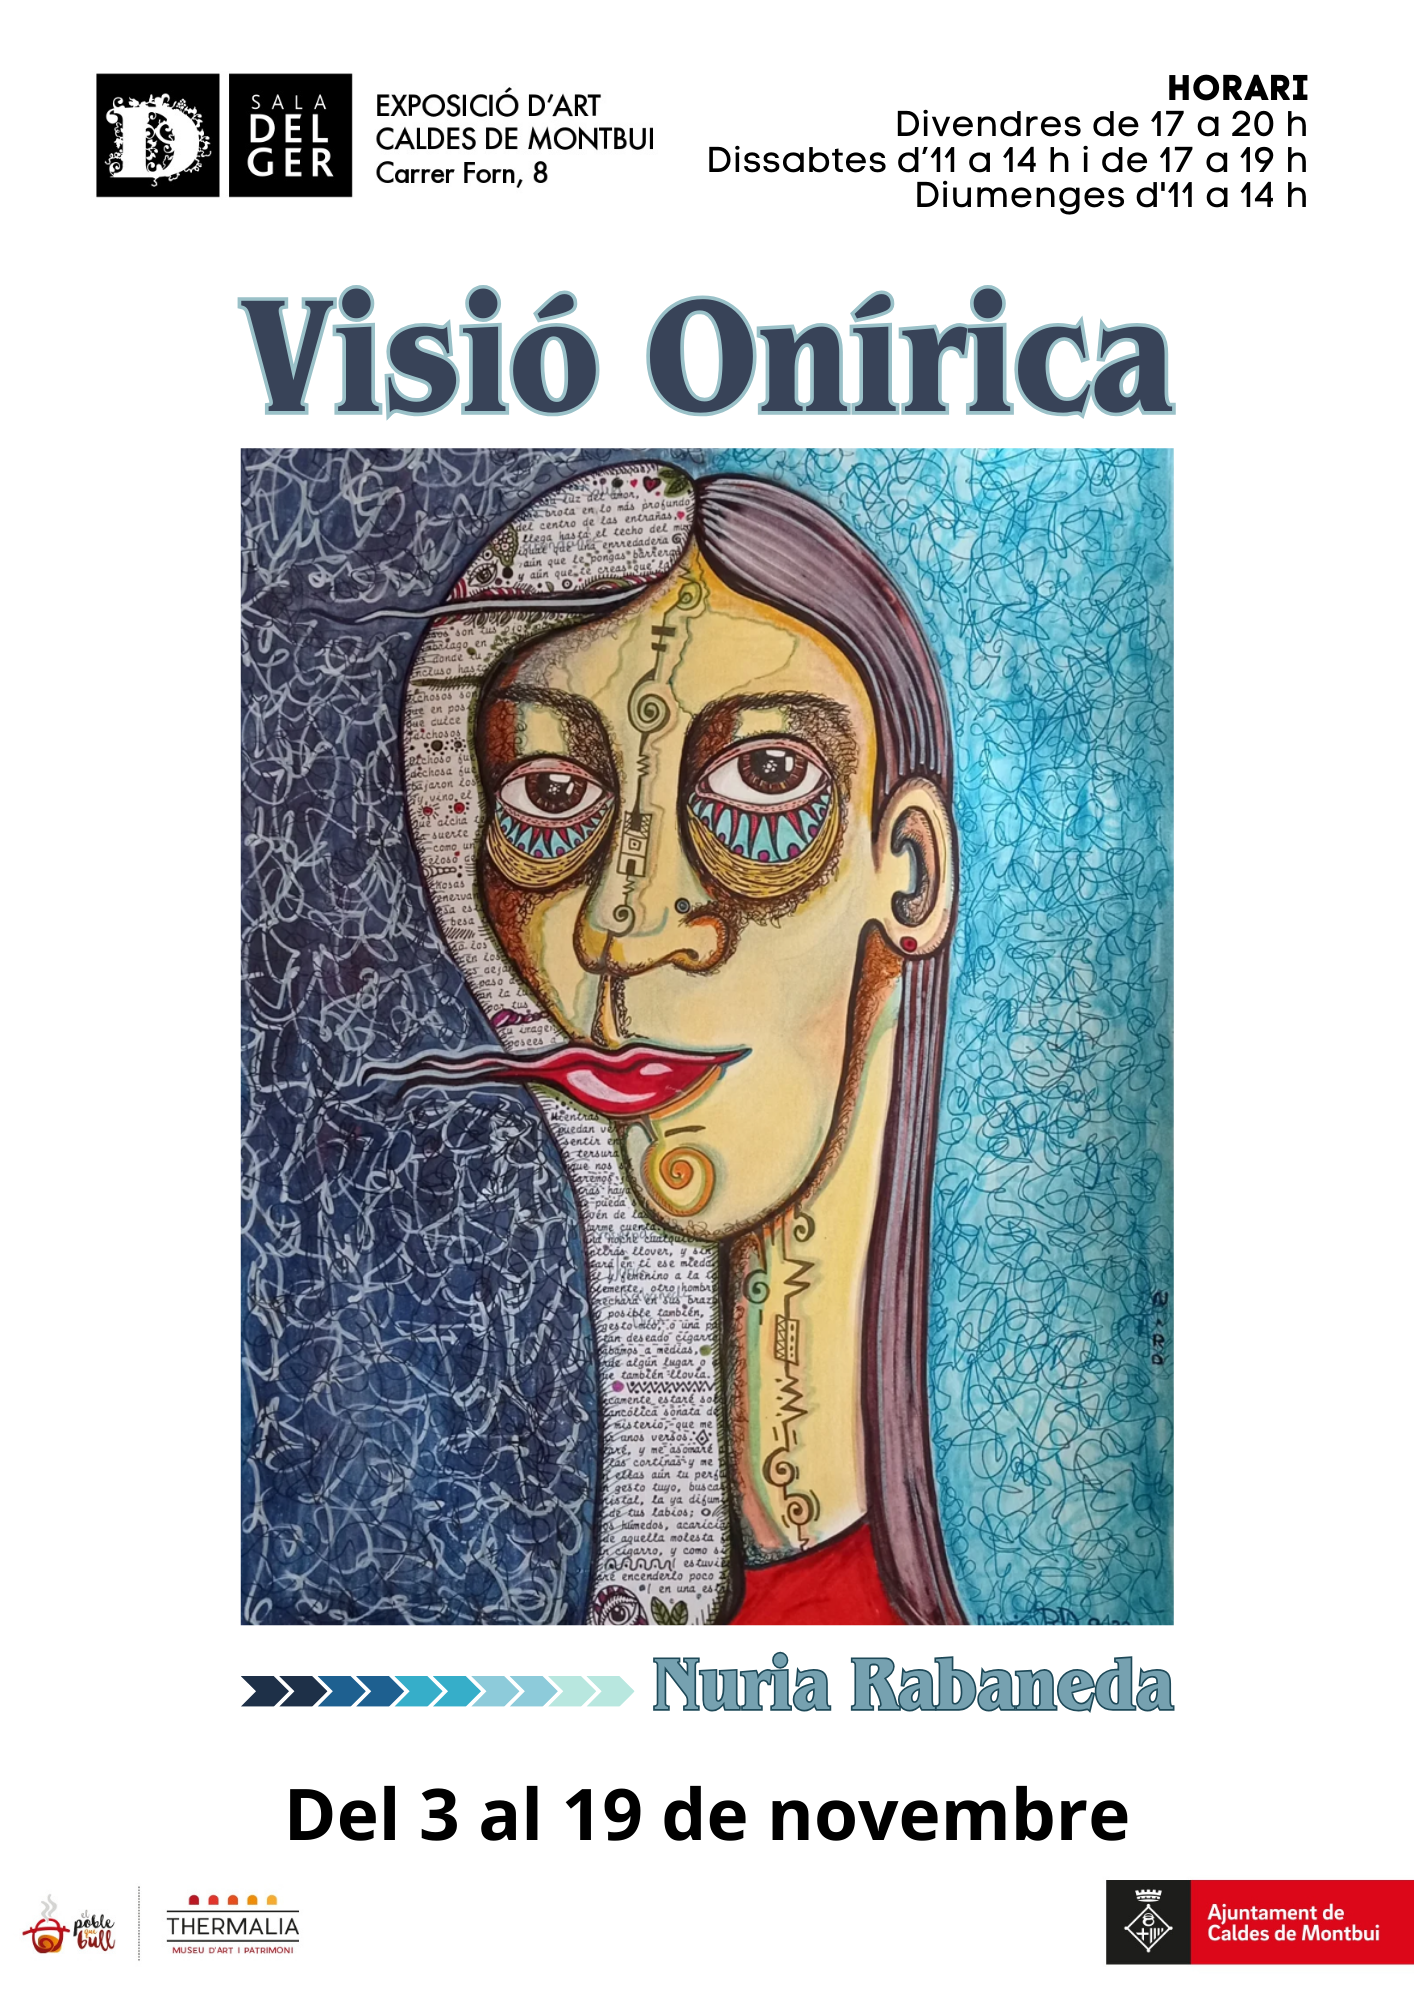 Exposició de pintures “Visió Onírica” fins el 19 de novembre, a la Sala Delger   